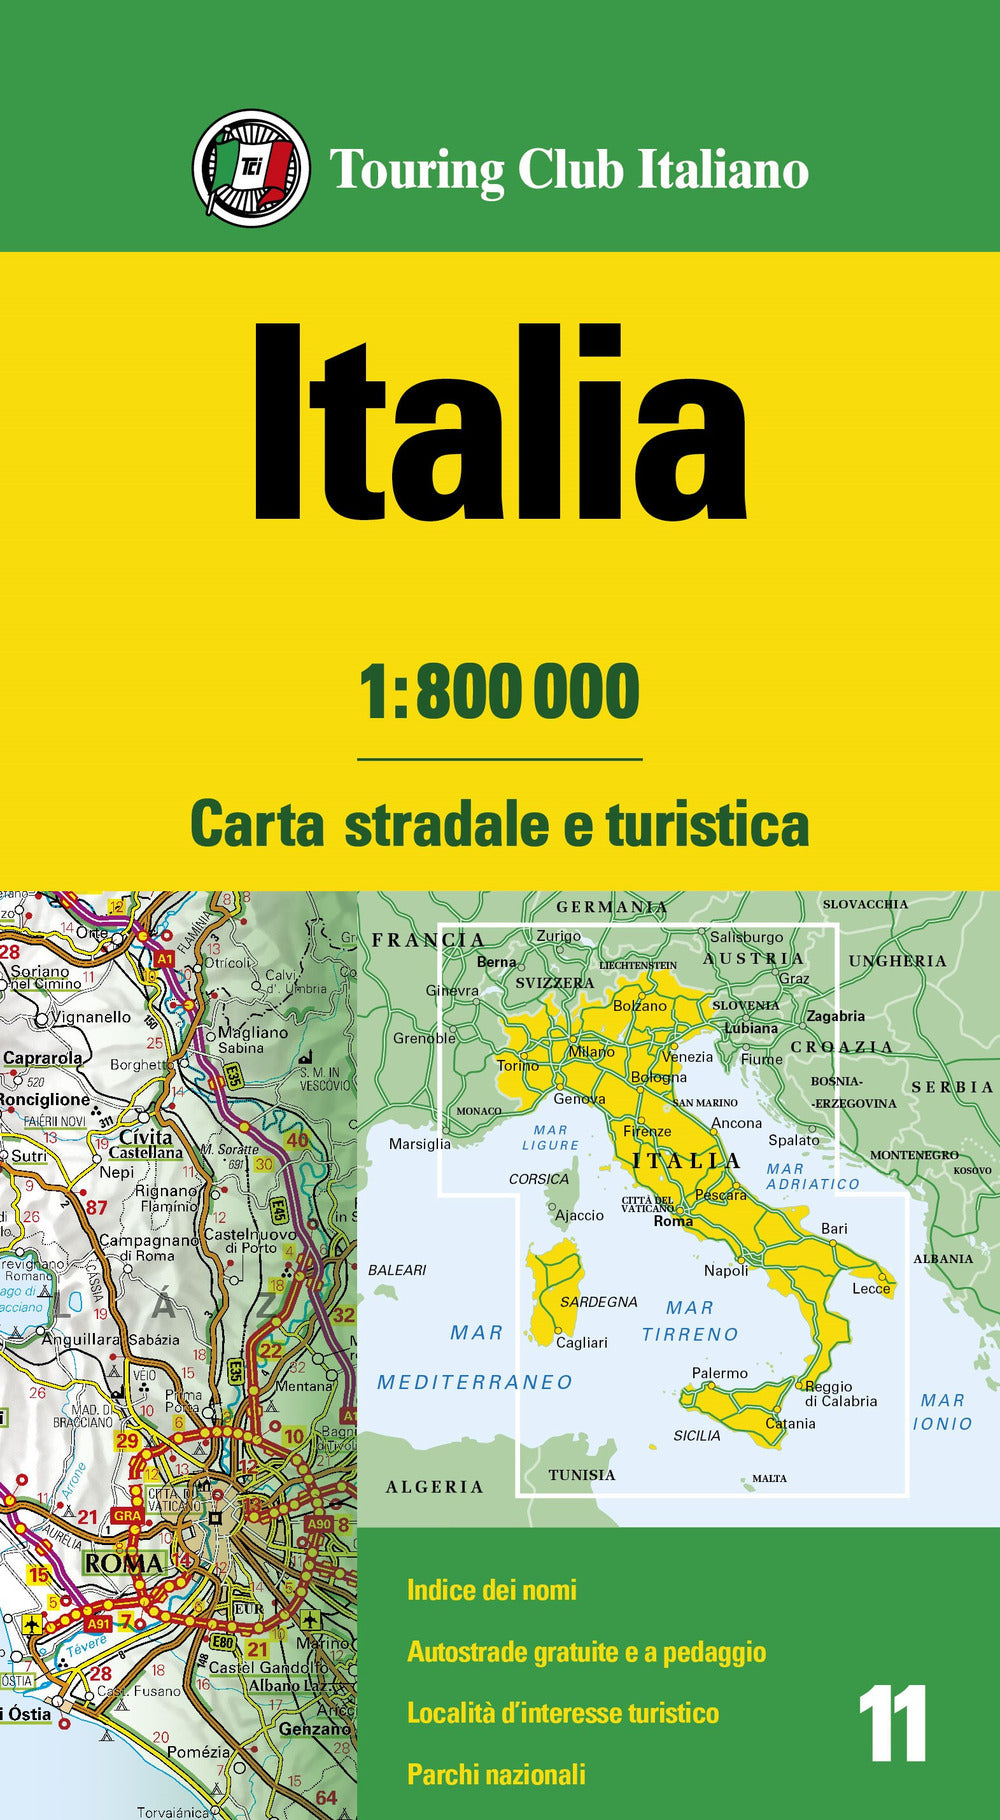 Italia 1:800.000